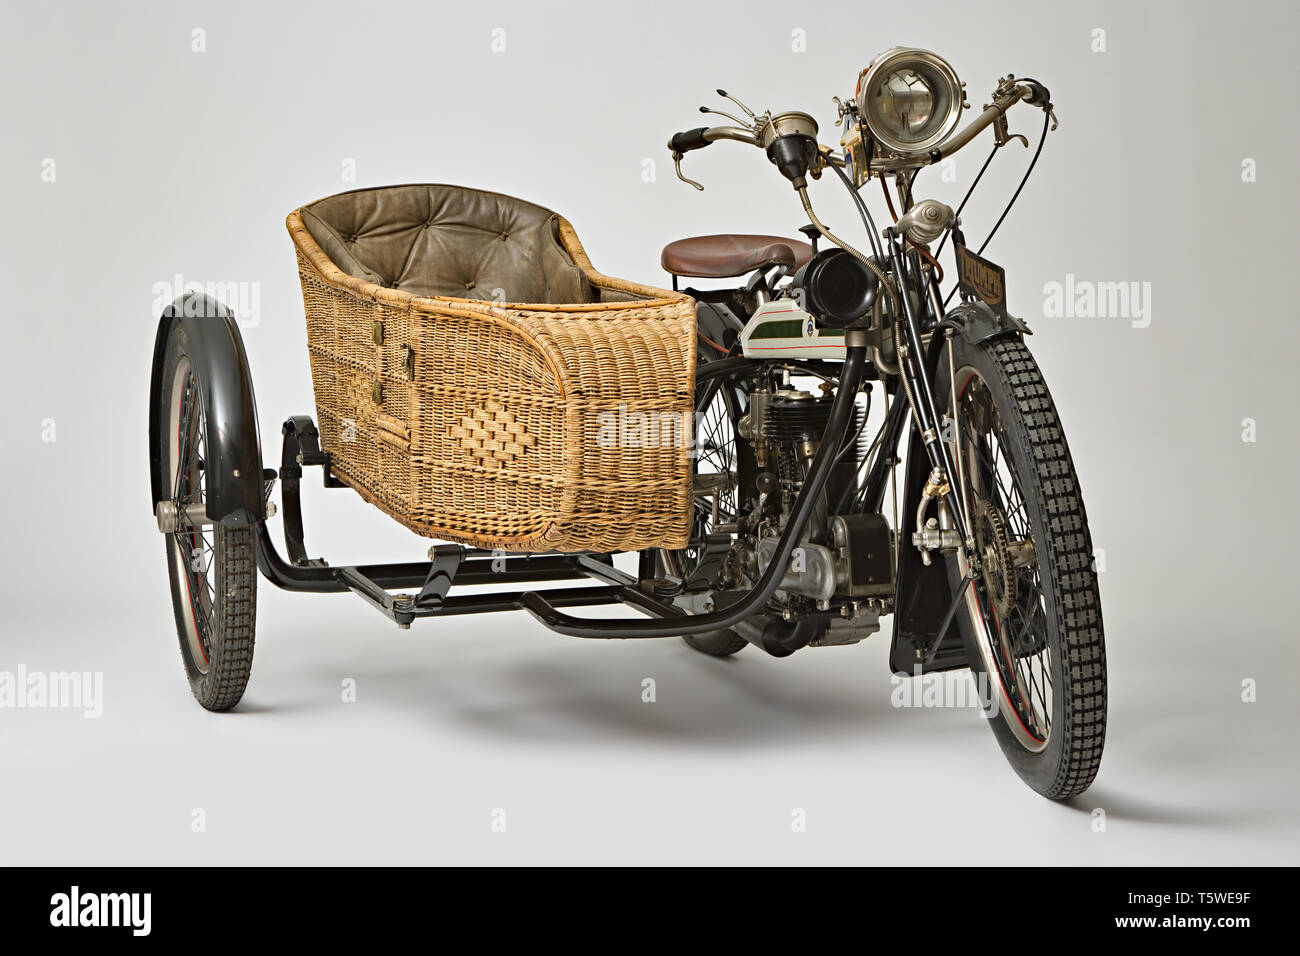 Moto d'epoca Triumph H Side  Marca: Triumph modello: H Side nazione: Regno Unito - Coventry anno: 1918 condizioni: restaurato cilindrata Stock Photo